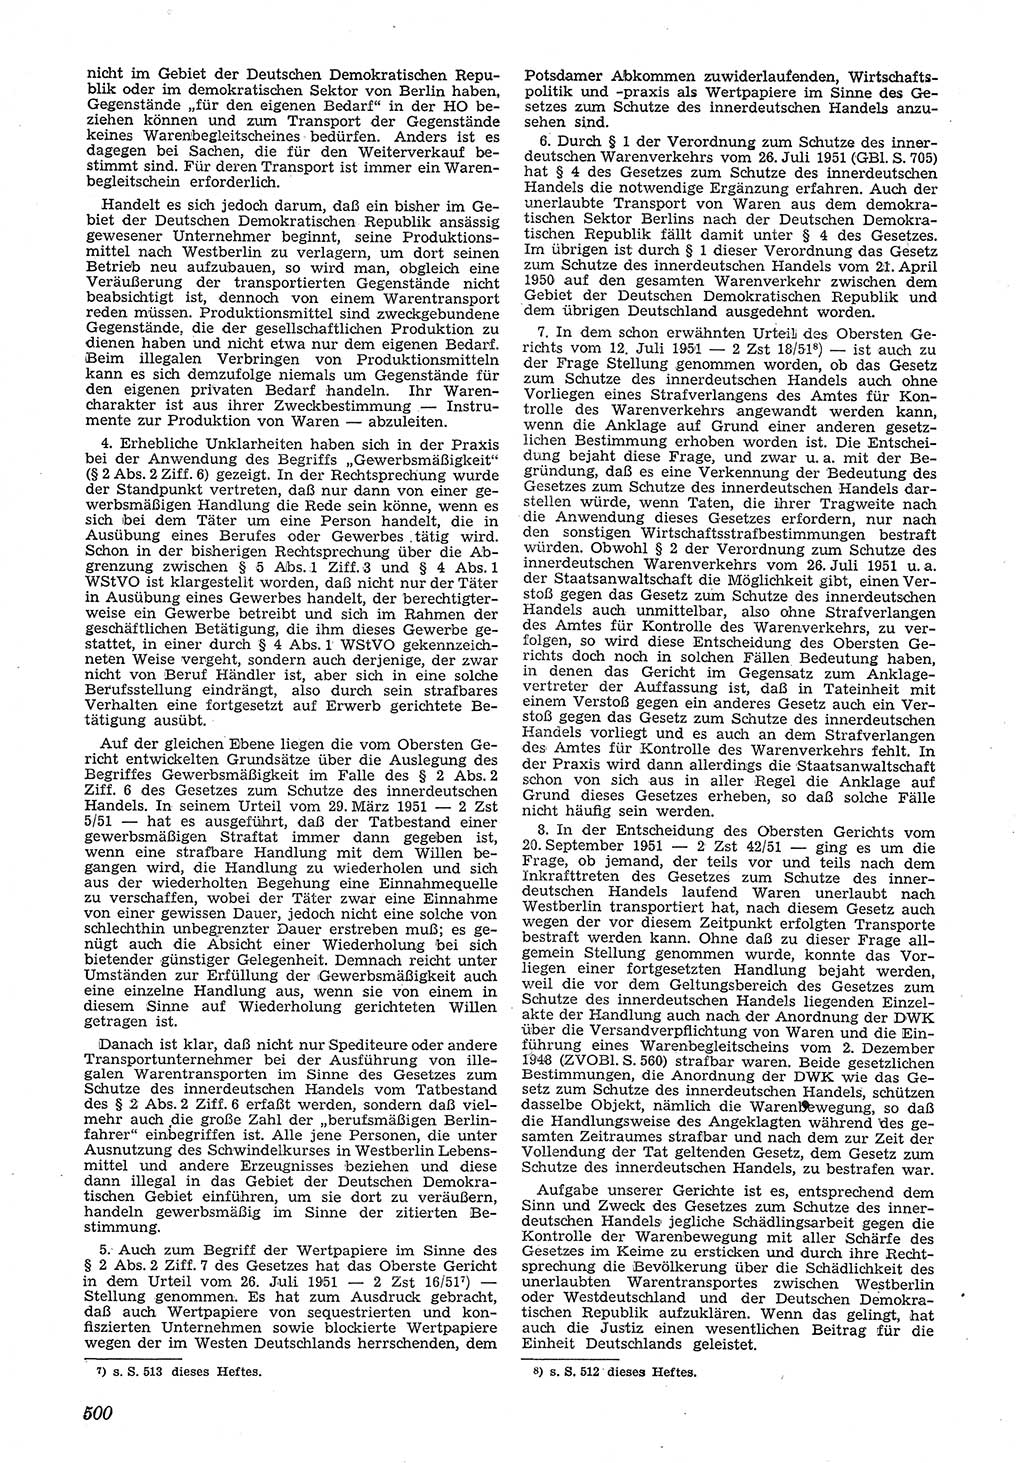 Neue Justiz (NJ), Zeitschrift für Recht und Rechtswissenschaft [Deutsche Demokratische Republik (DDR)], 5. Jahrgang 1951, Seite 500 (NJ DDR 1951, S. 500)